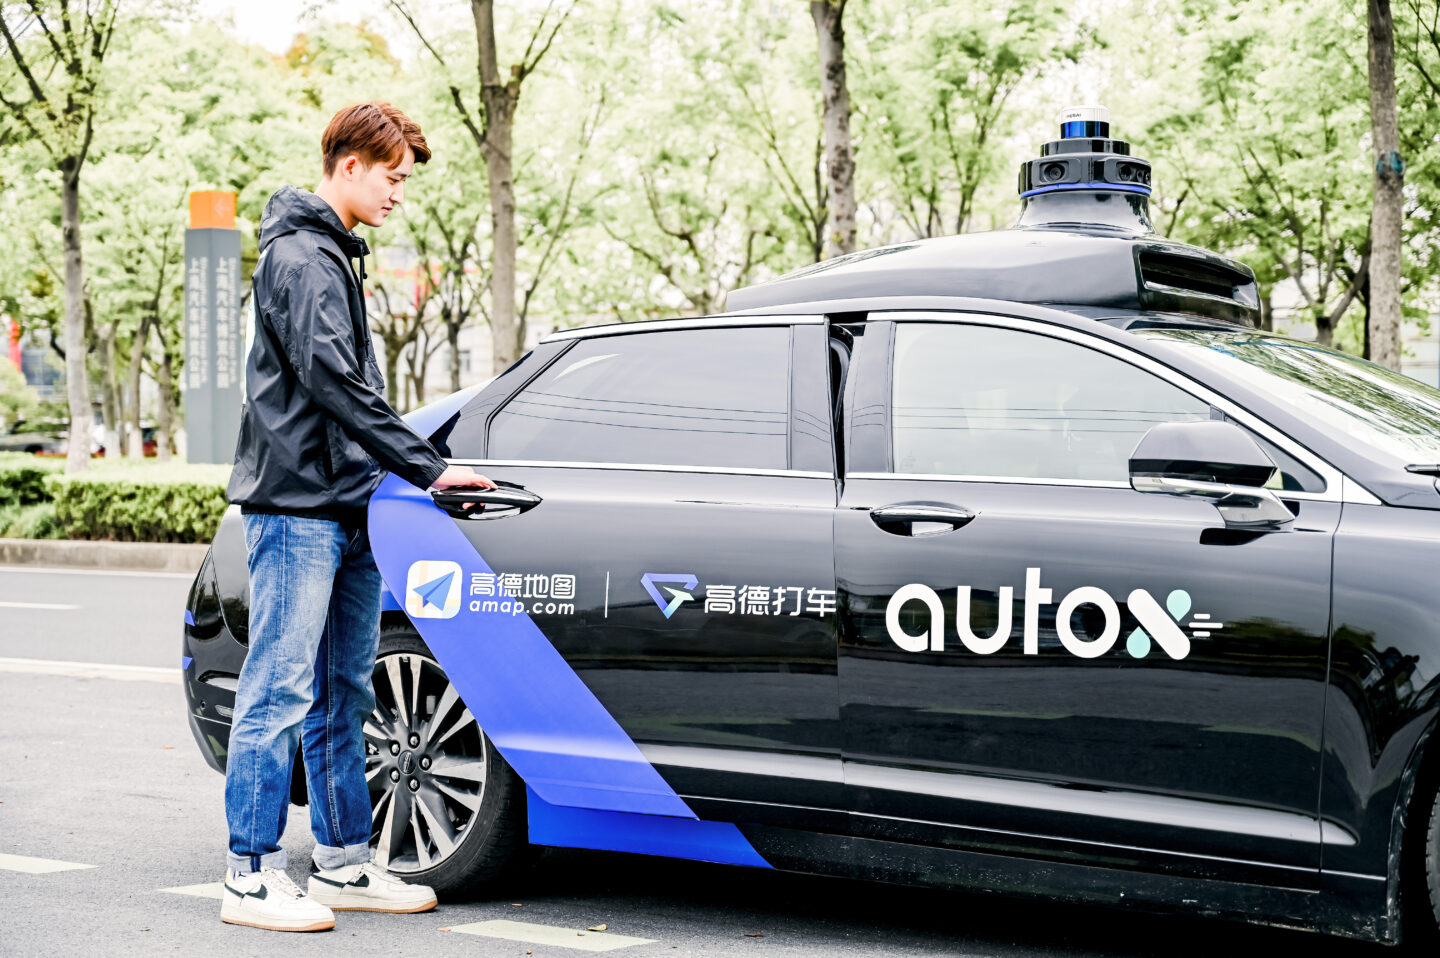 Стартап AutoX розширив зону обслуговування сервісу роботаксі у китайському Шеньчжені до 1 тис. км²